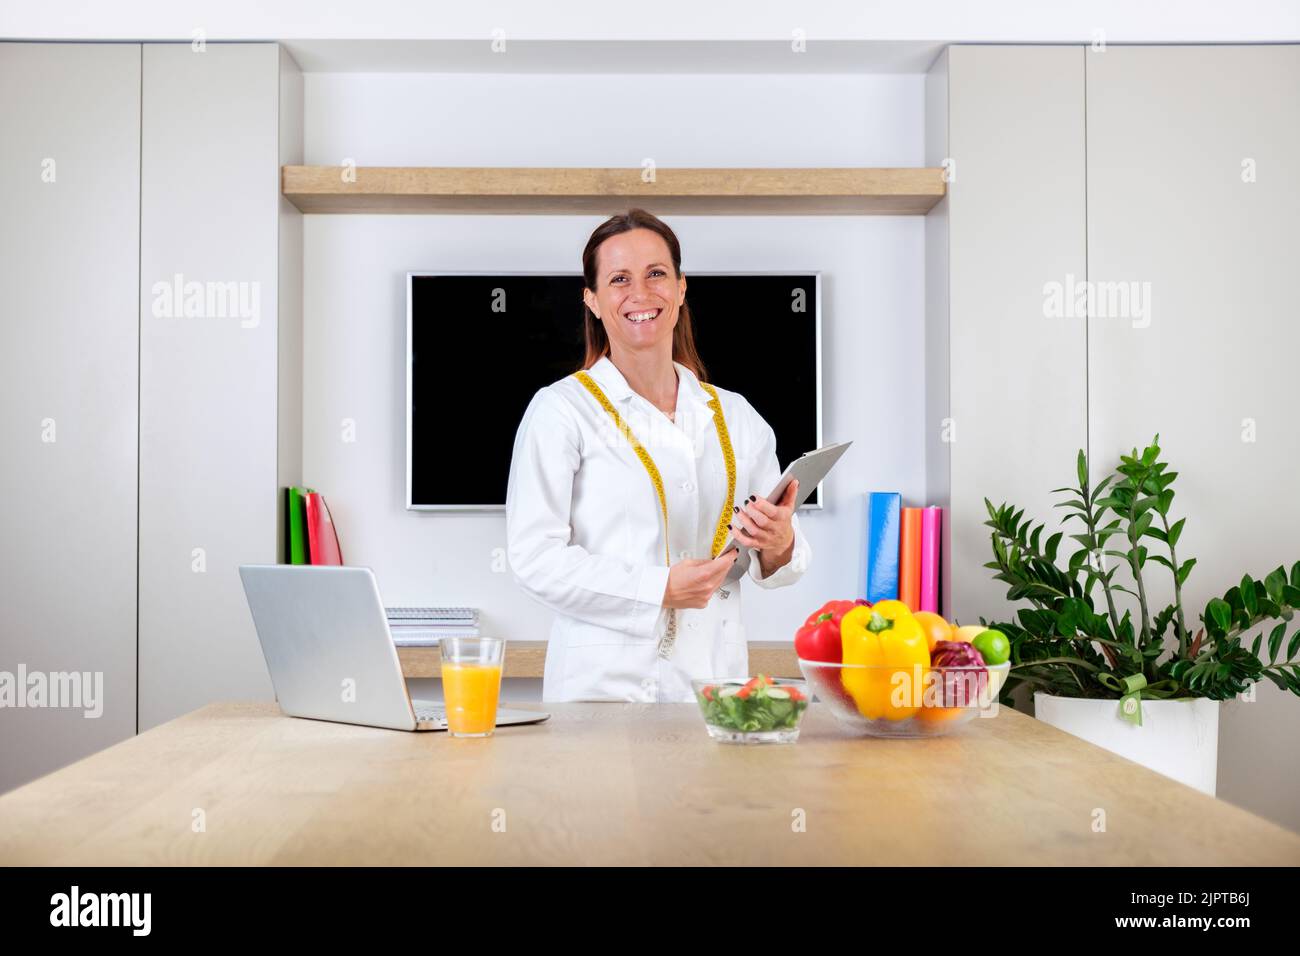 Ritratto di una giovane donna sorridente medico nutrizionista in piedi tenendo bilancia e metro a nastro in sala ufficio moderna e luminosa Foto Stock